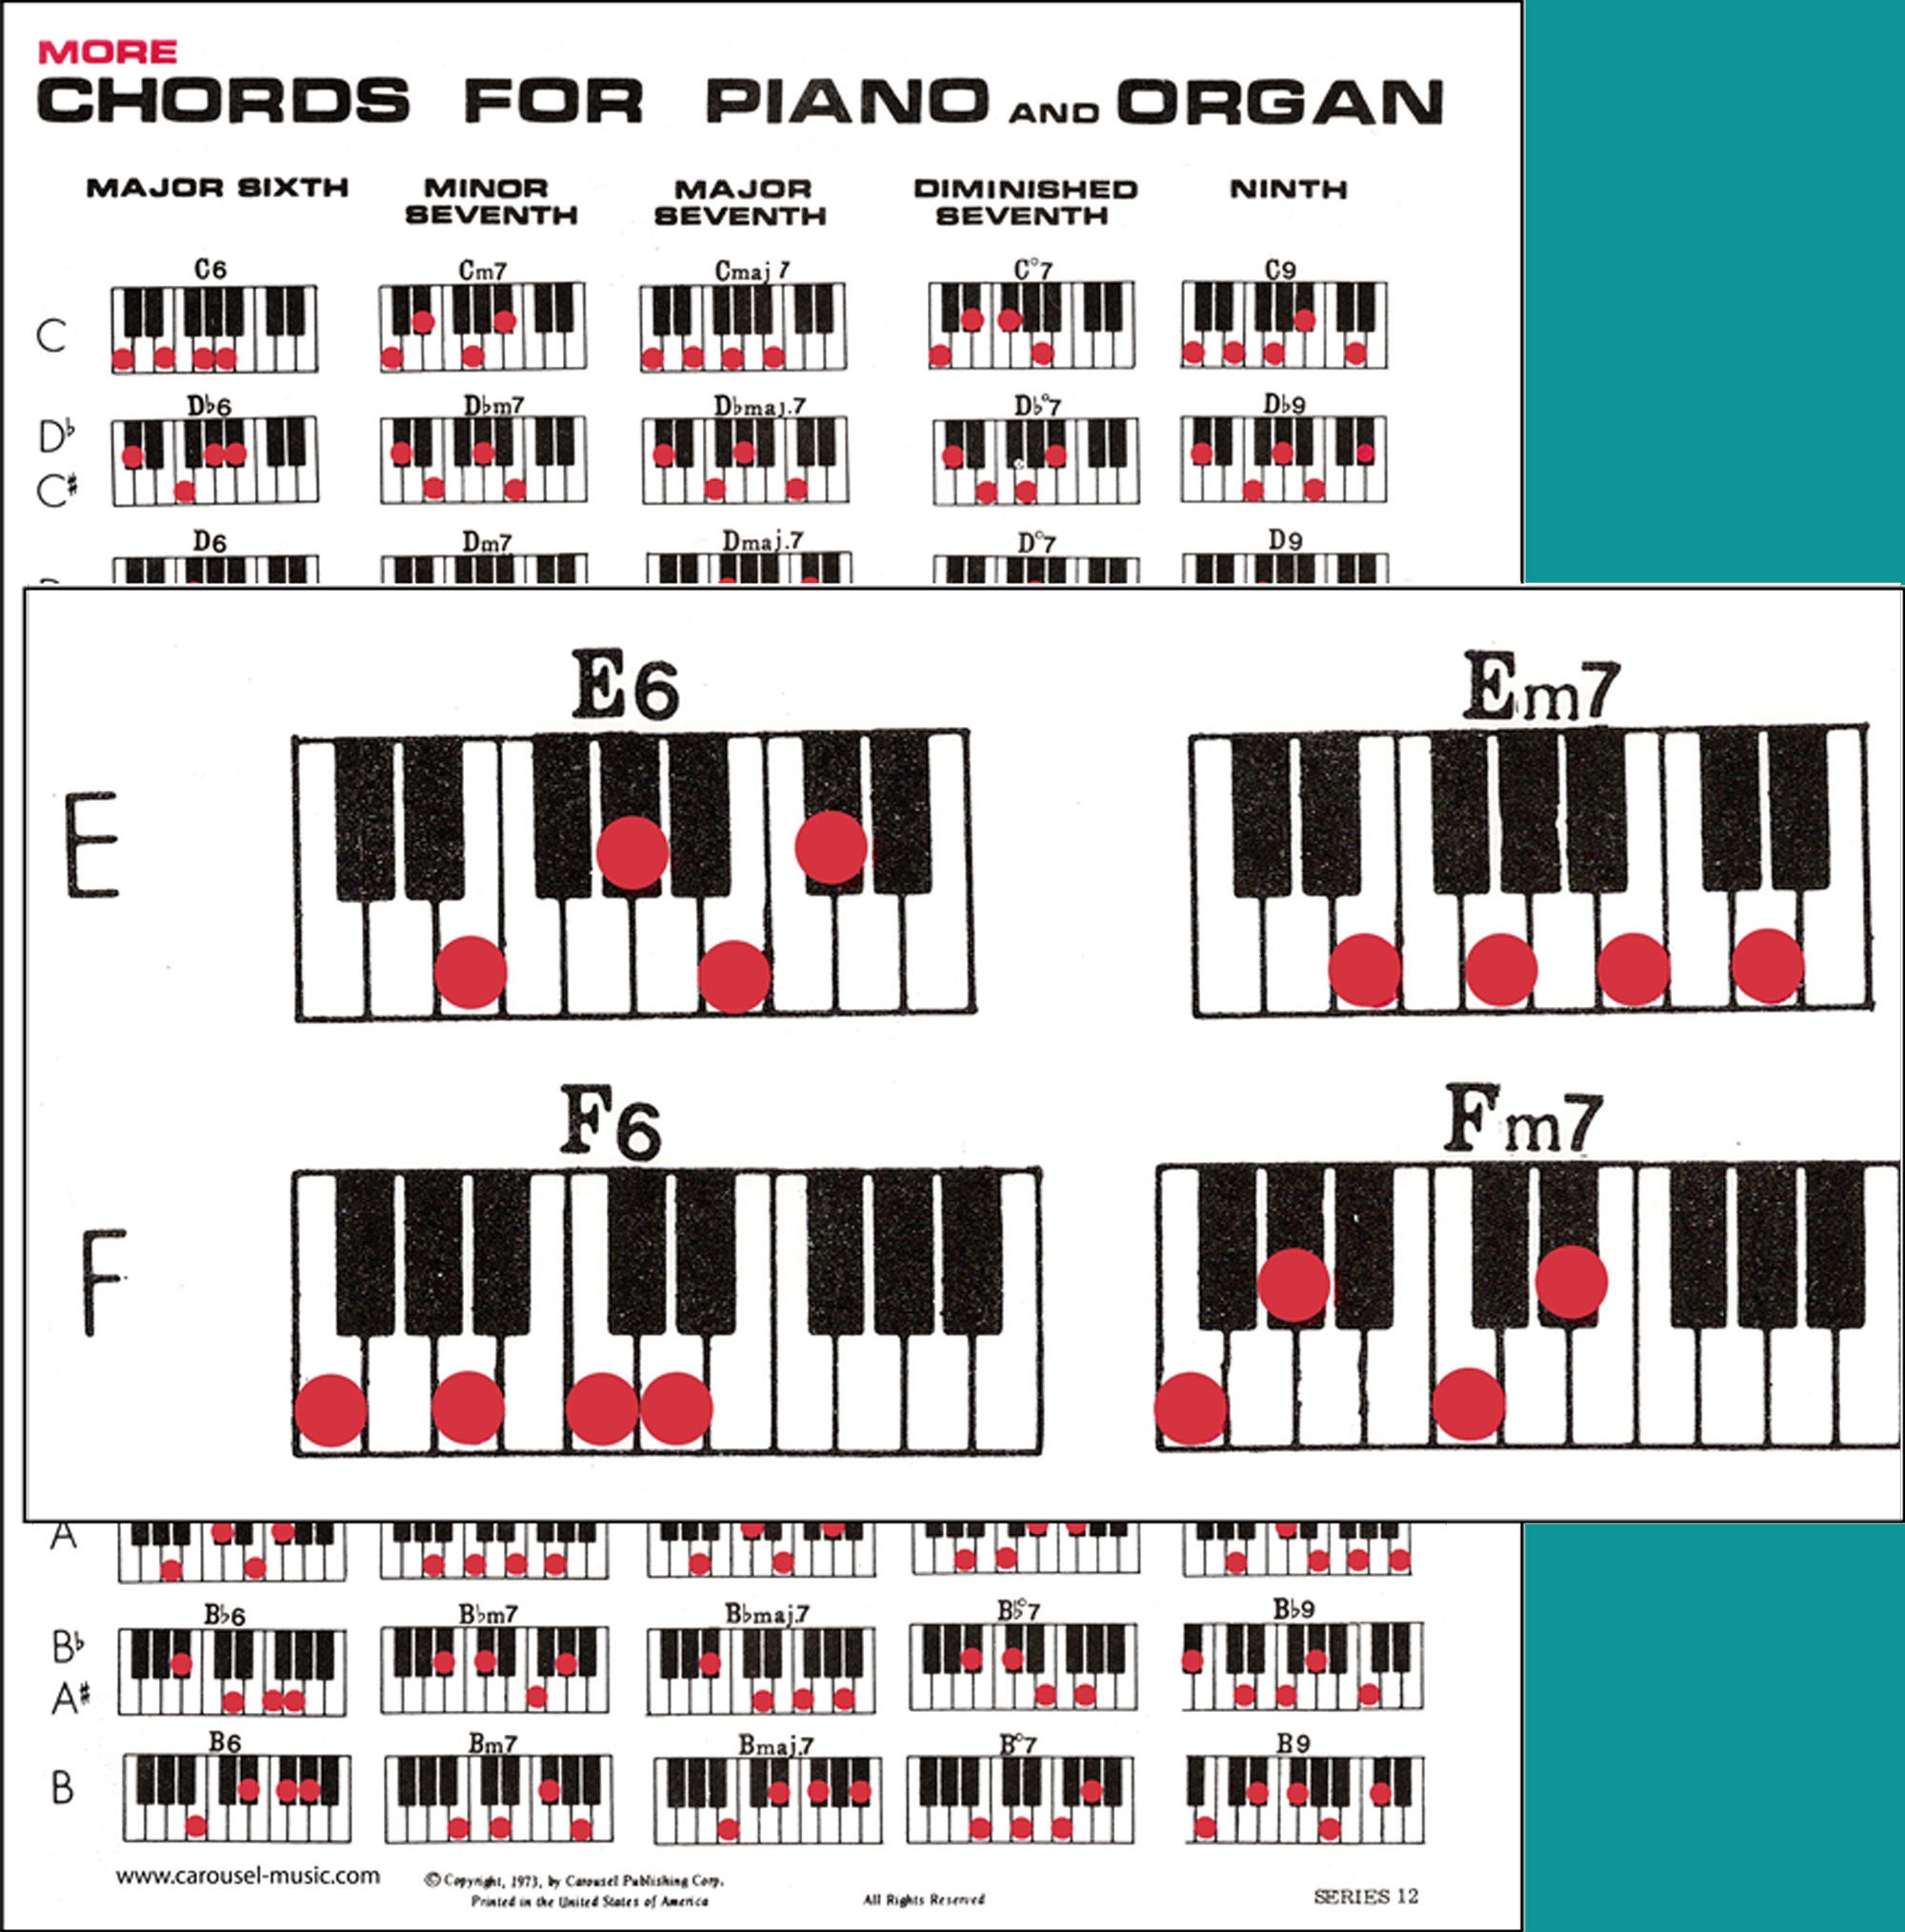 7 Rings by Ariana Grande Piano Tutorial | HDpiano